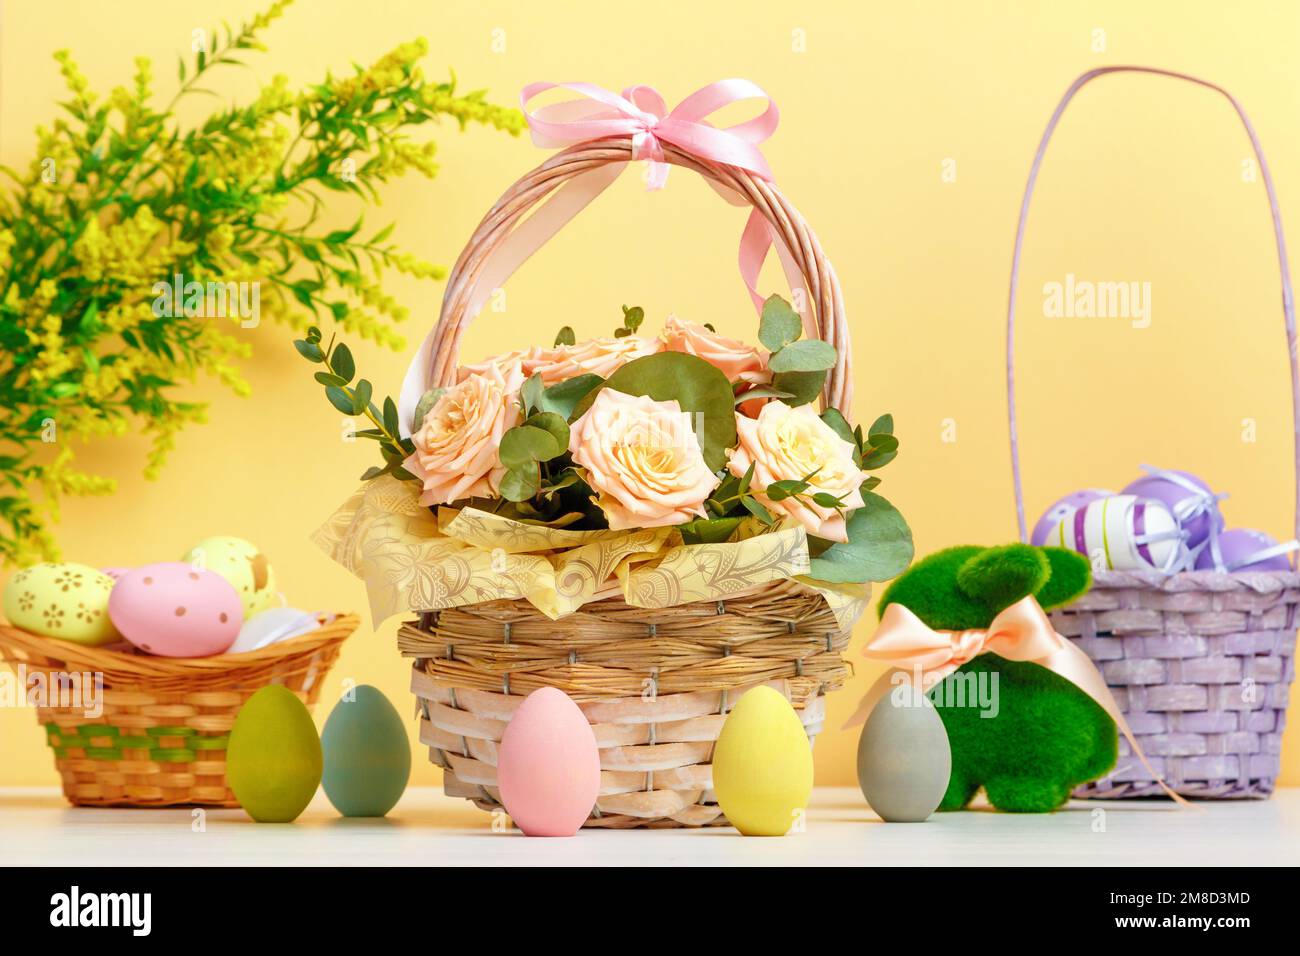 La composition de Pâques reste la vie. Un panier avec des fleurs et des œufs, un lapin jouet sur la table. Banque D'Images